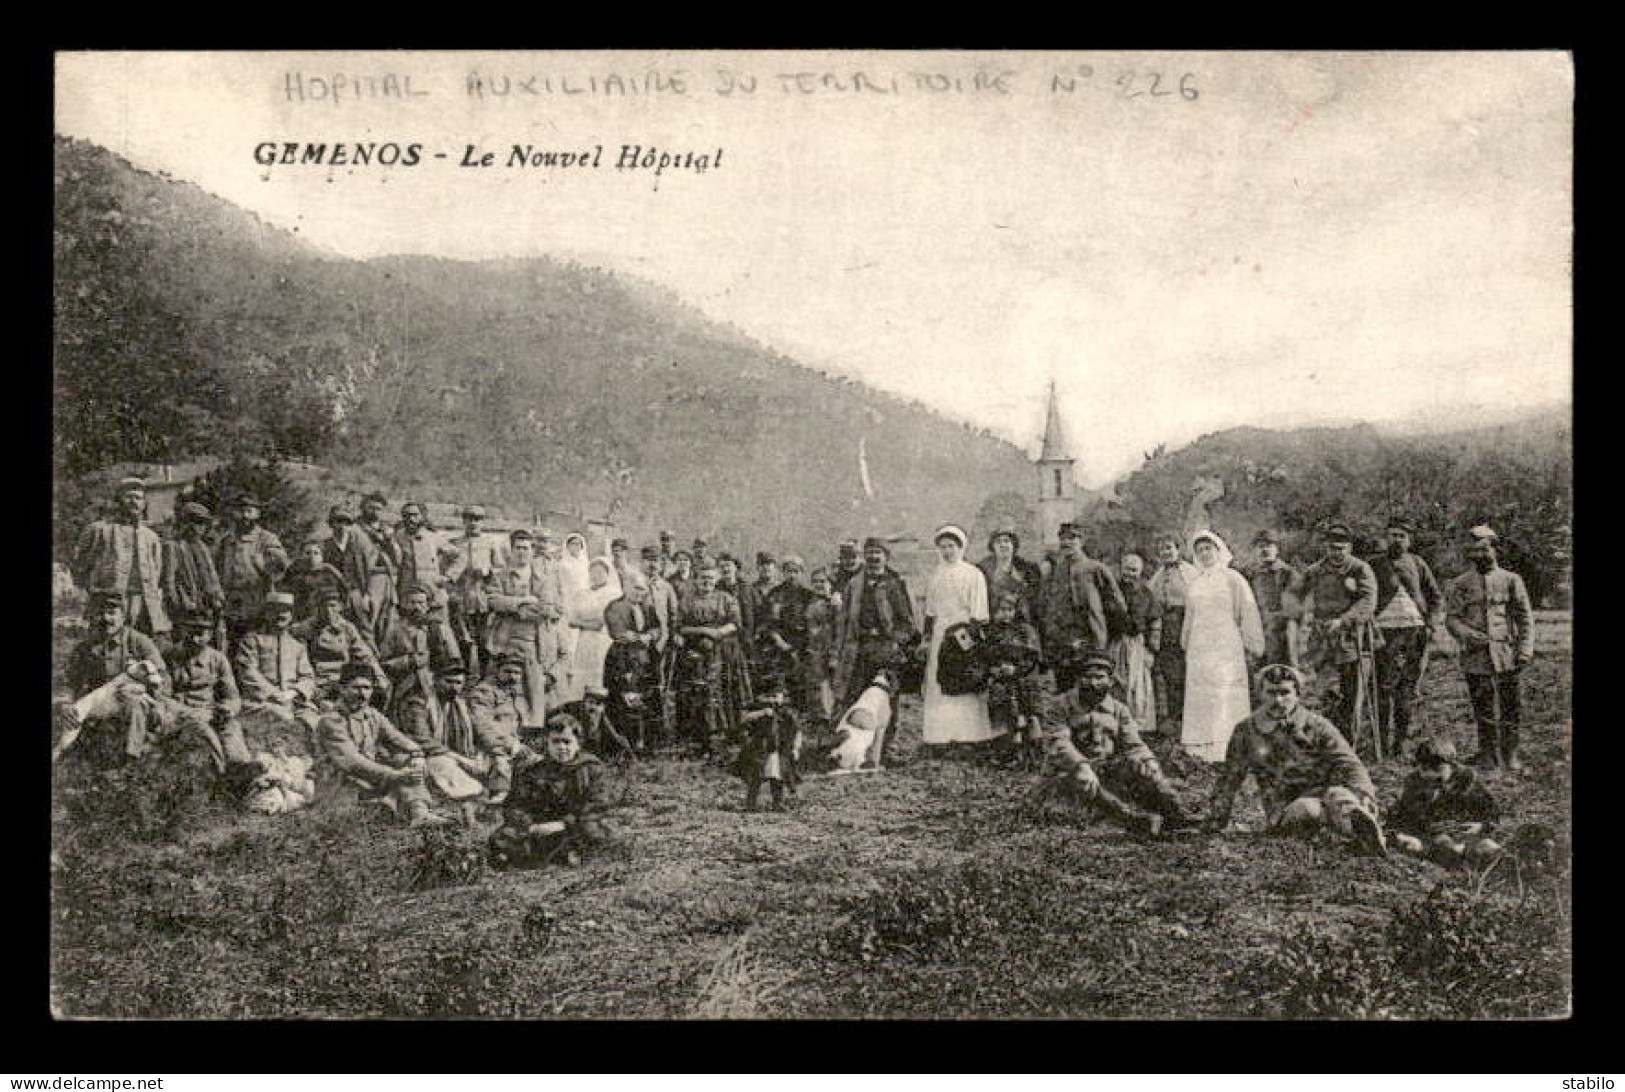 GEMENOS (BOUCHES-DU-RHONE) - CACHET HOPITAL AUXILIAIRE DU TERRITOIRE N°226 - LE NOUVEL HOPITAL - Guerra Del 1914-18